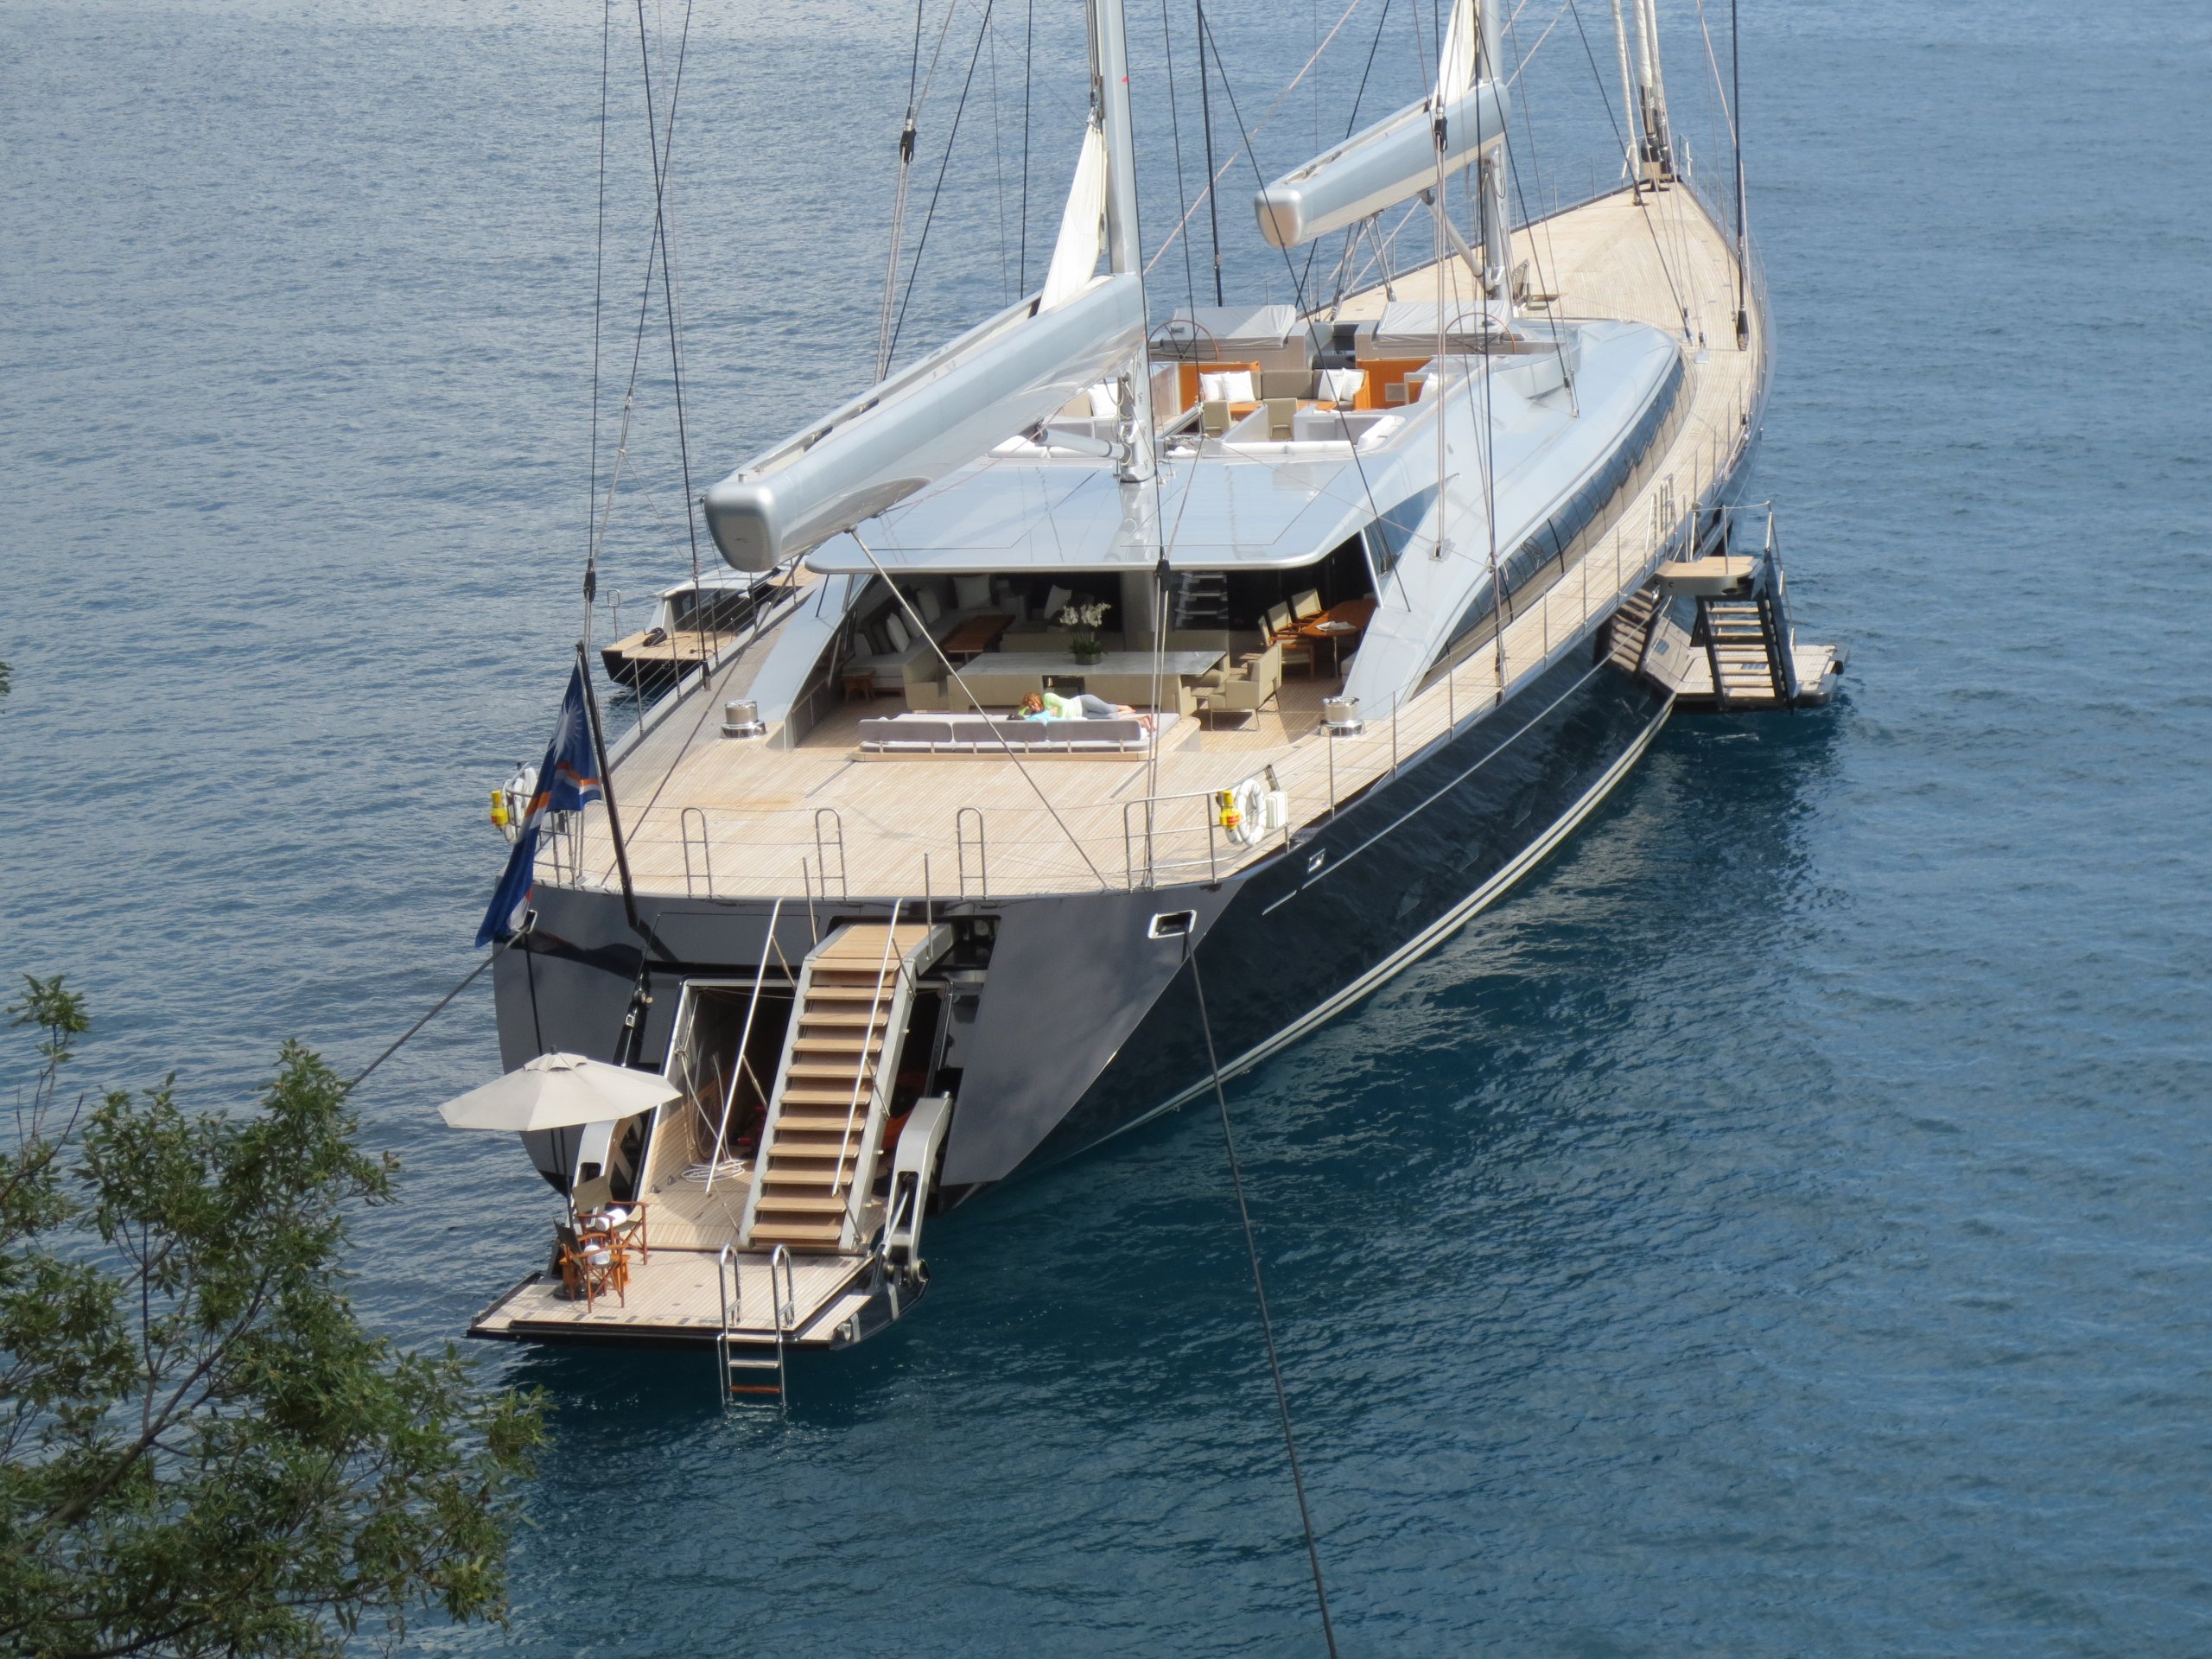 VERTIGO Yacht - Alloy Yachts - 2011 - Propriétaire Rupert Murdoch